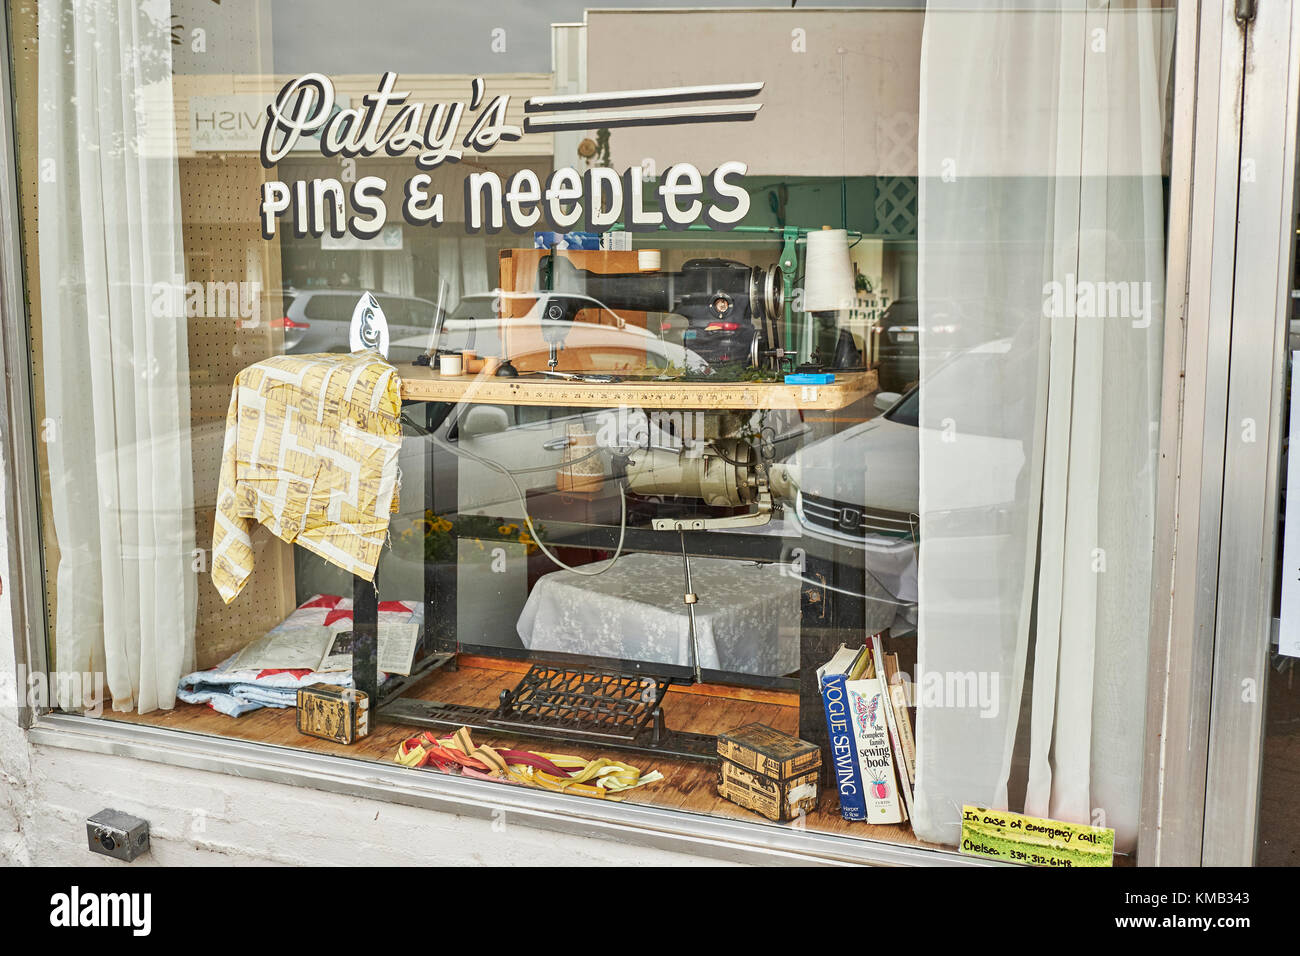 Vintage Style nähen shop shop Fenster vorne in der kleinen ländlichen Stadt im Süden der USA Prattville, Alabama in den Vereinigten Staaten. Stockfoto